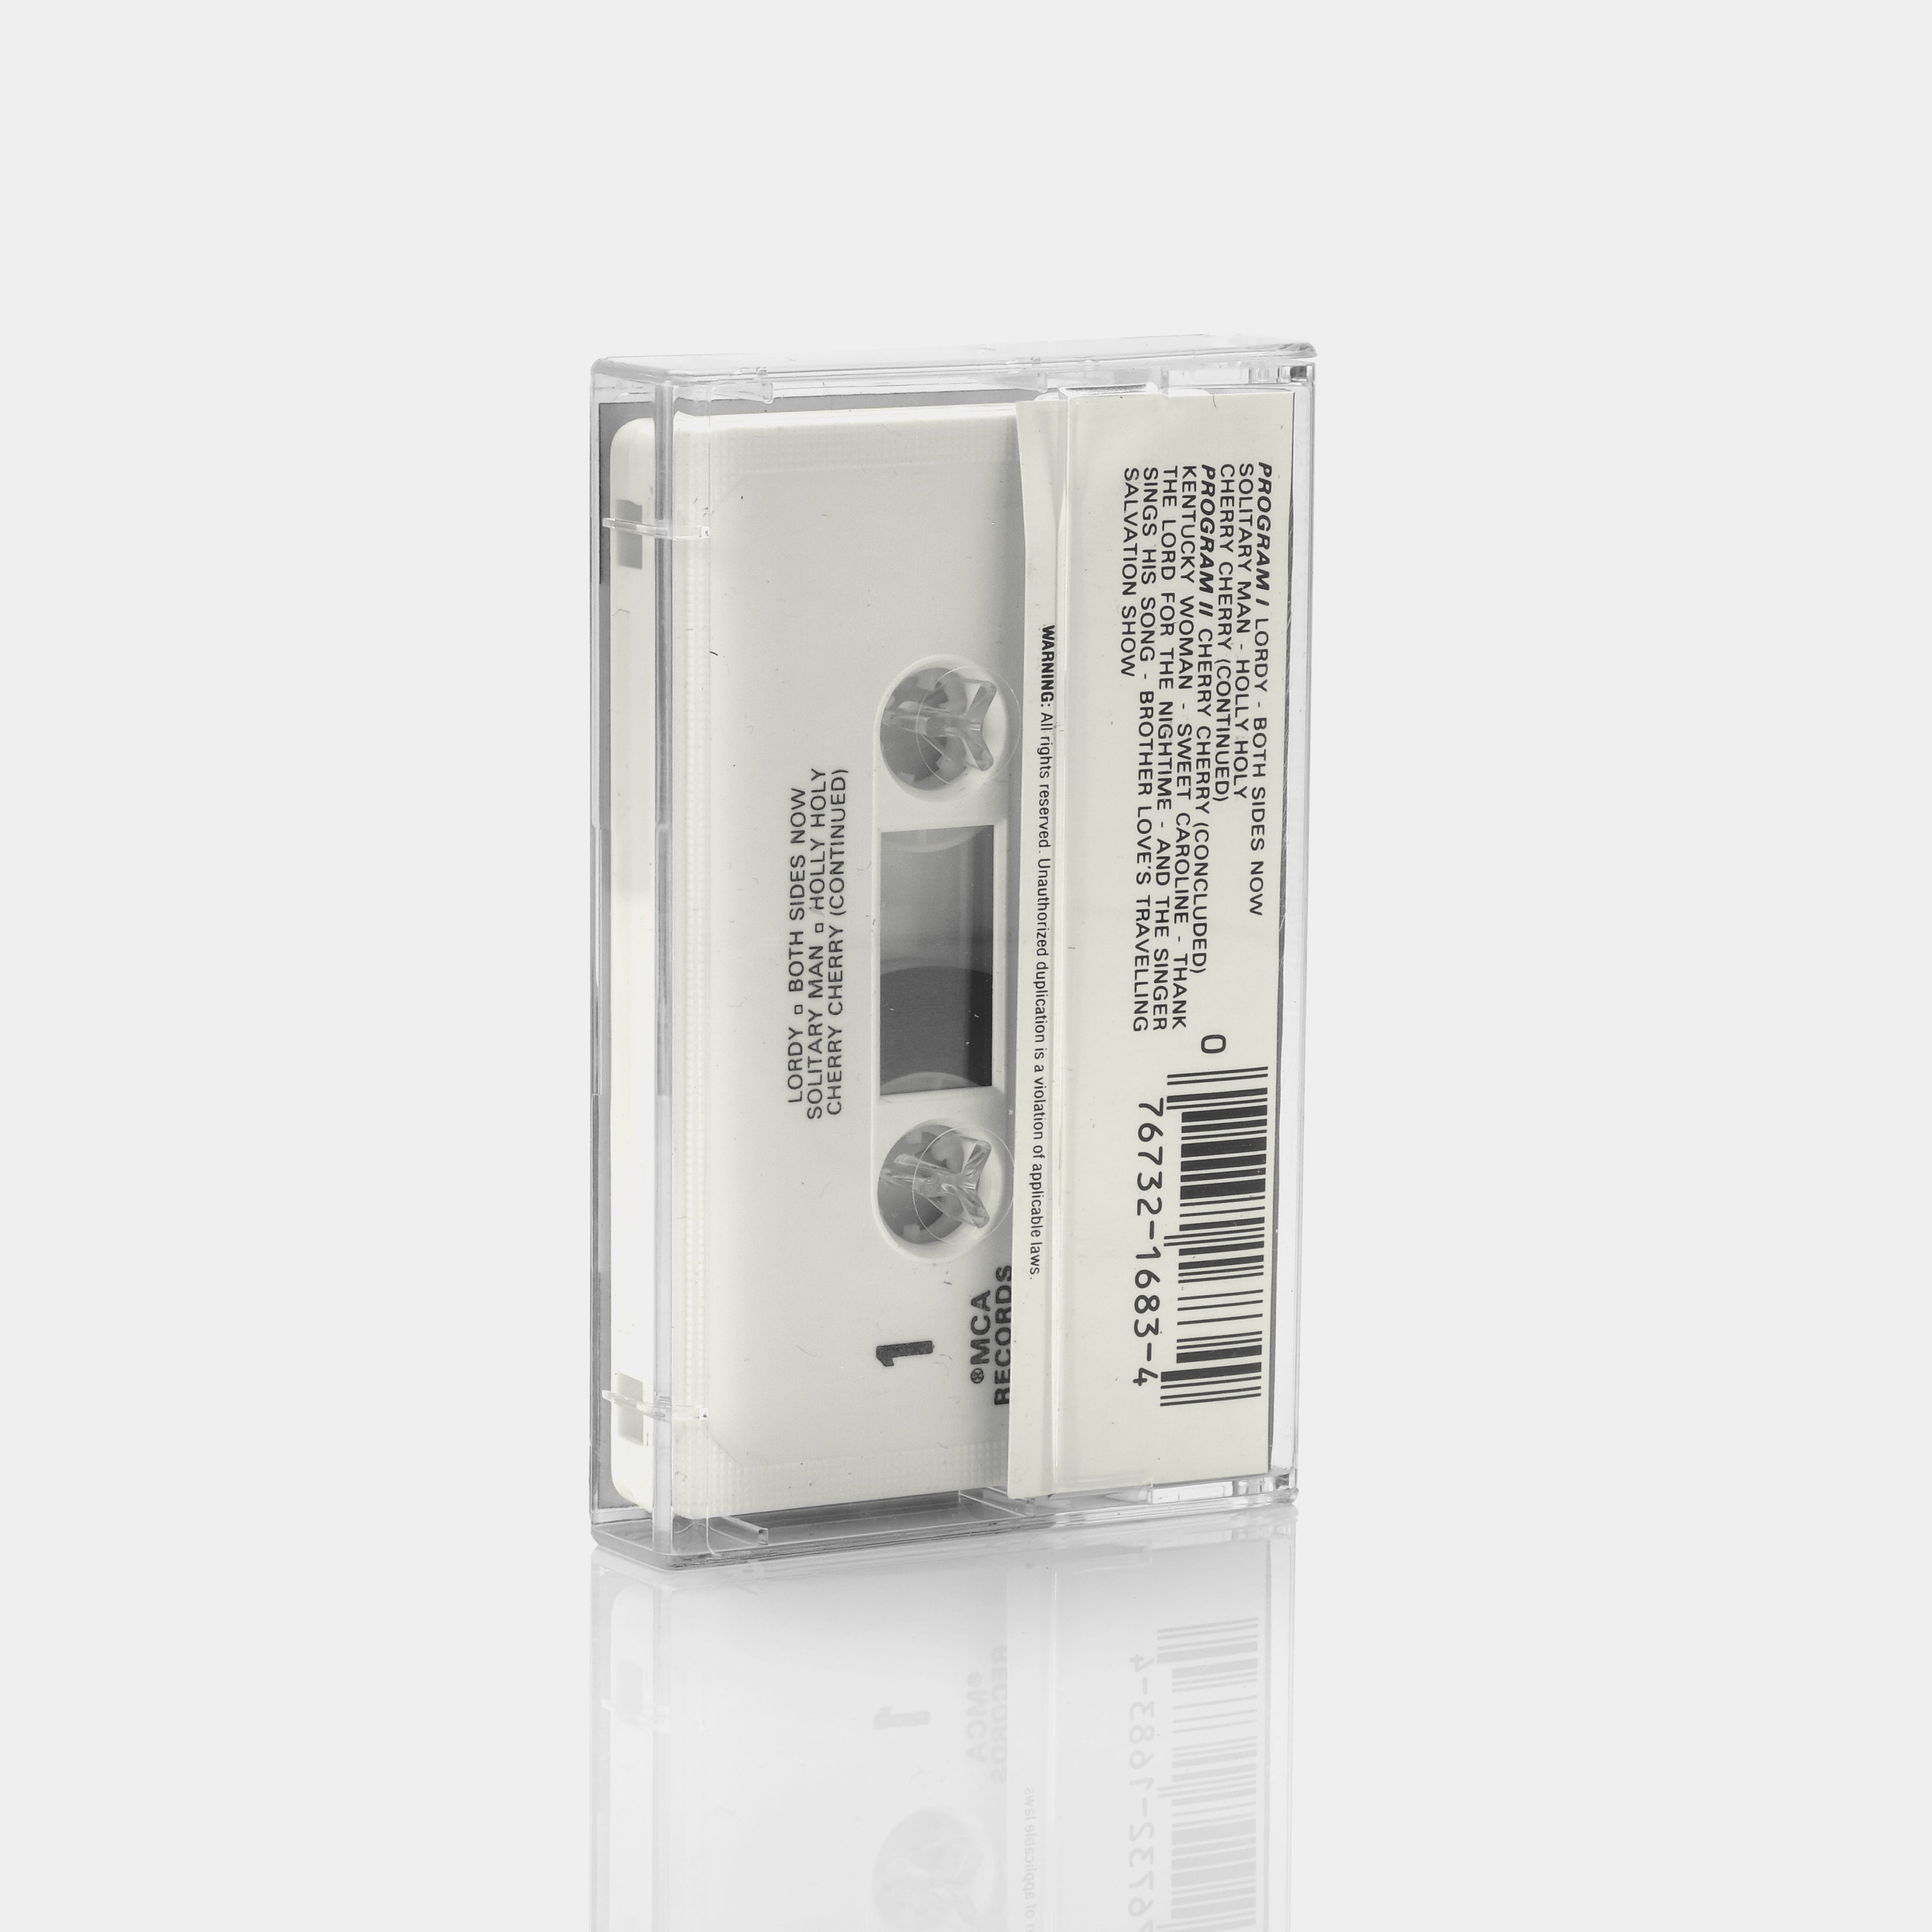 Neil Diamond - Gold Cassette Tape